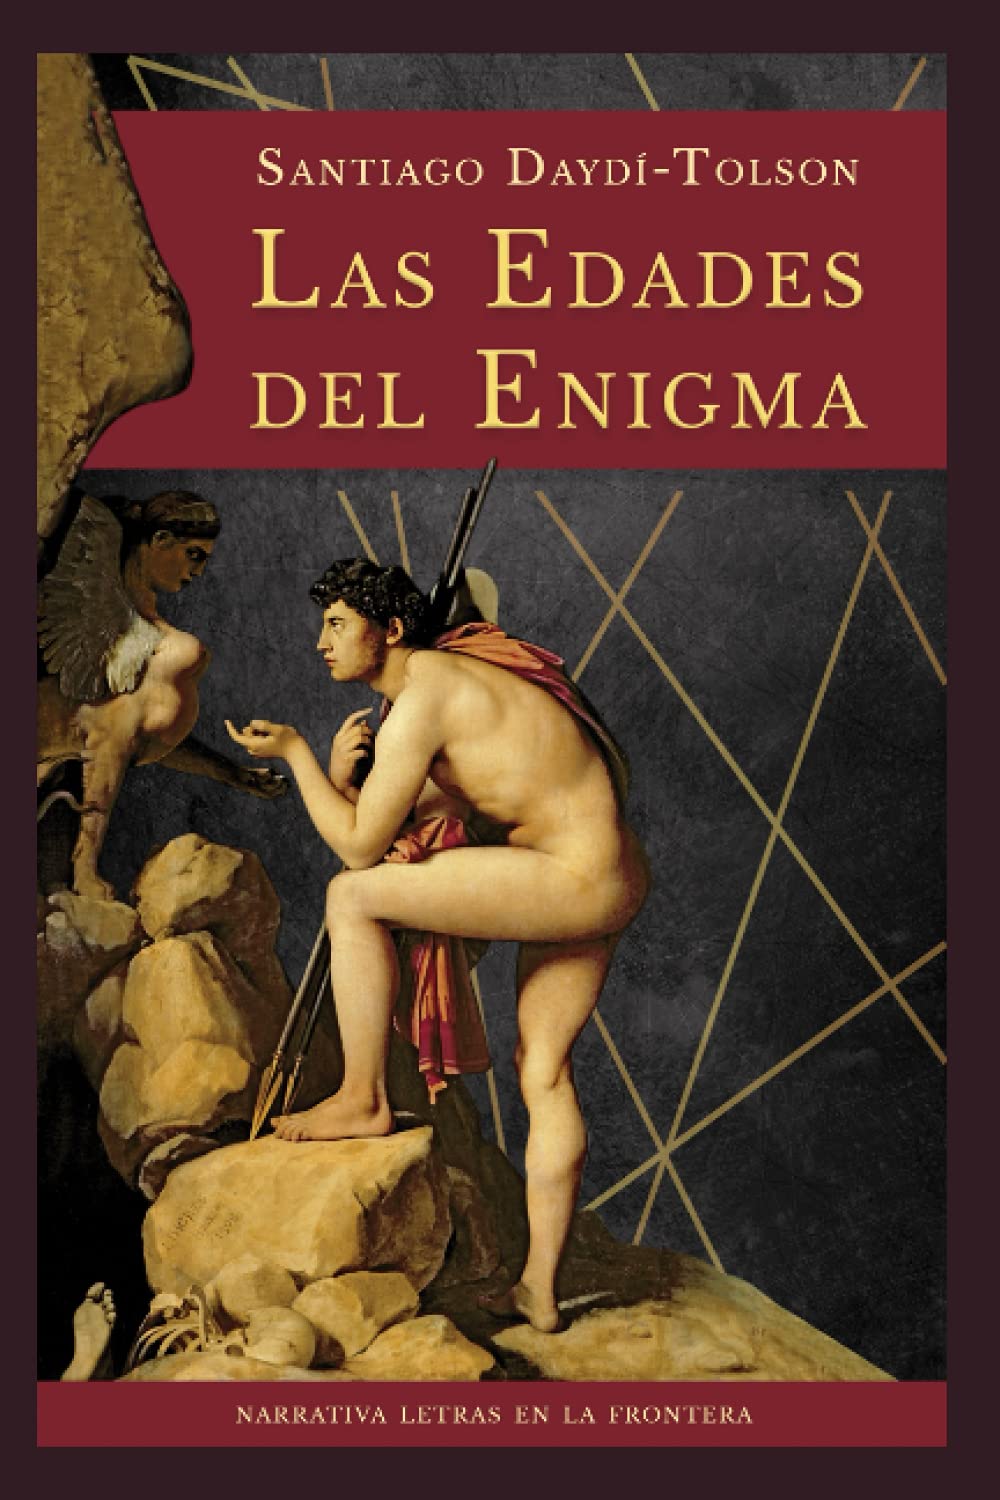 Las edades del enigma book cover